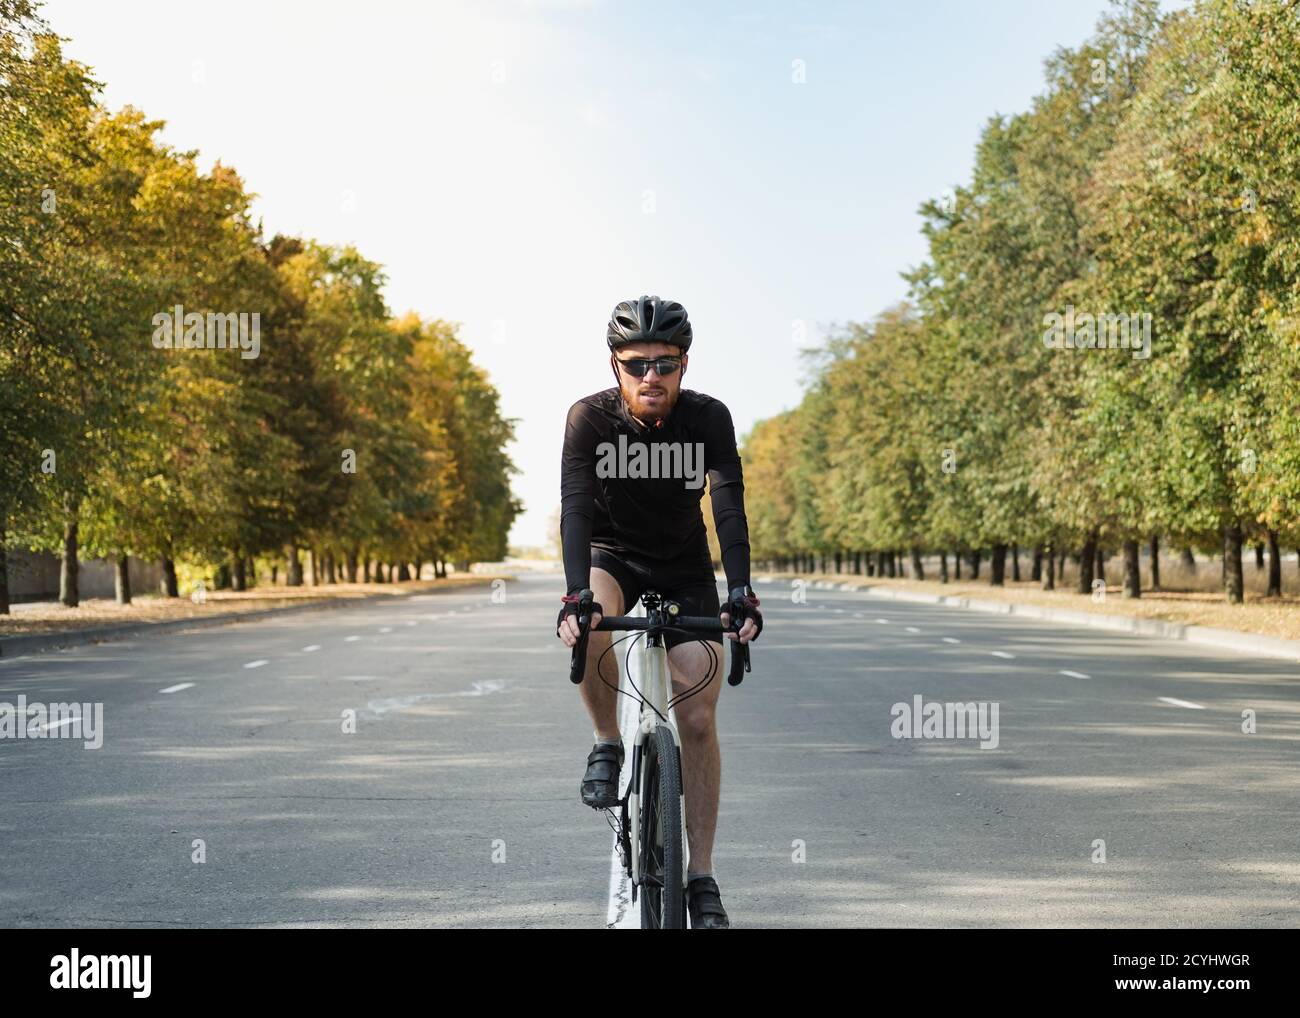 Ritratto di un uomo su una bici di ghiaia sulla strada. Ciclista ben attrezzata che guida una bicicletta moderna all'aperto Foto Stock